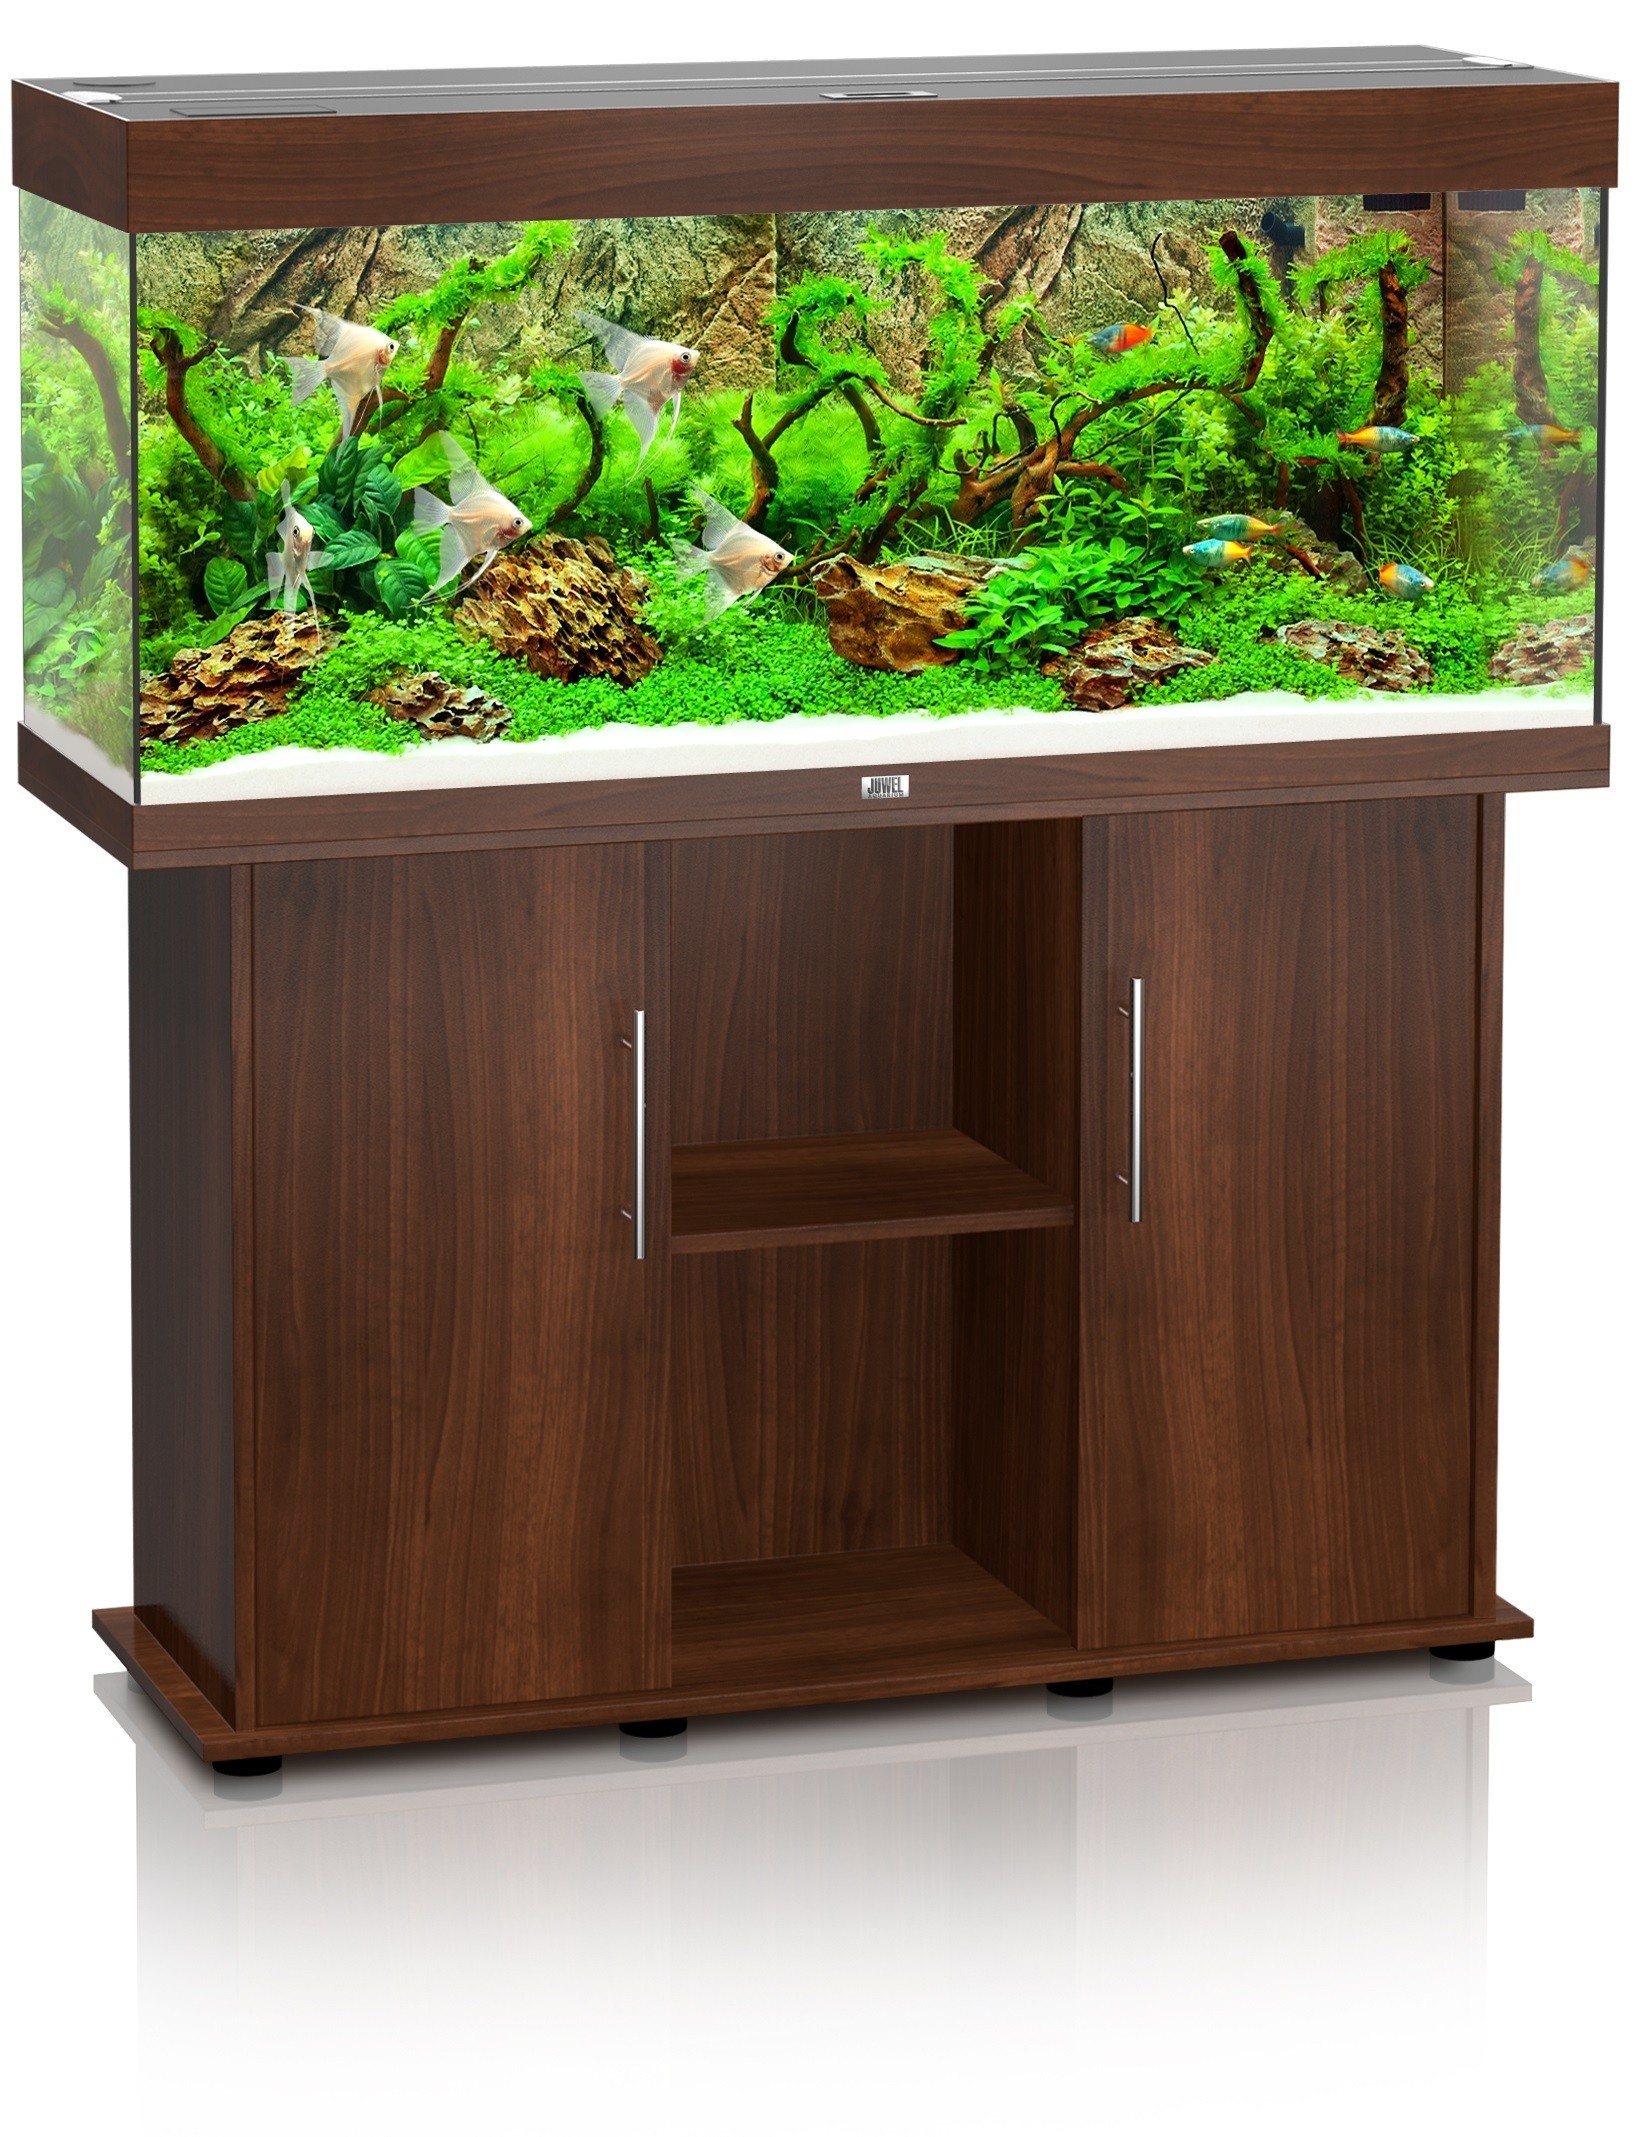 Aquarium Juwel Rio 240 brun + meuble